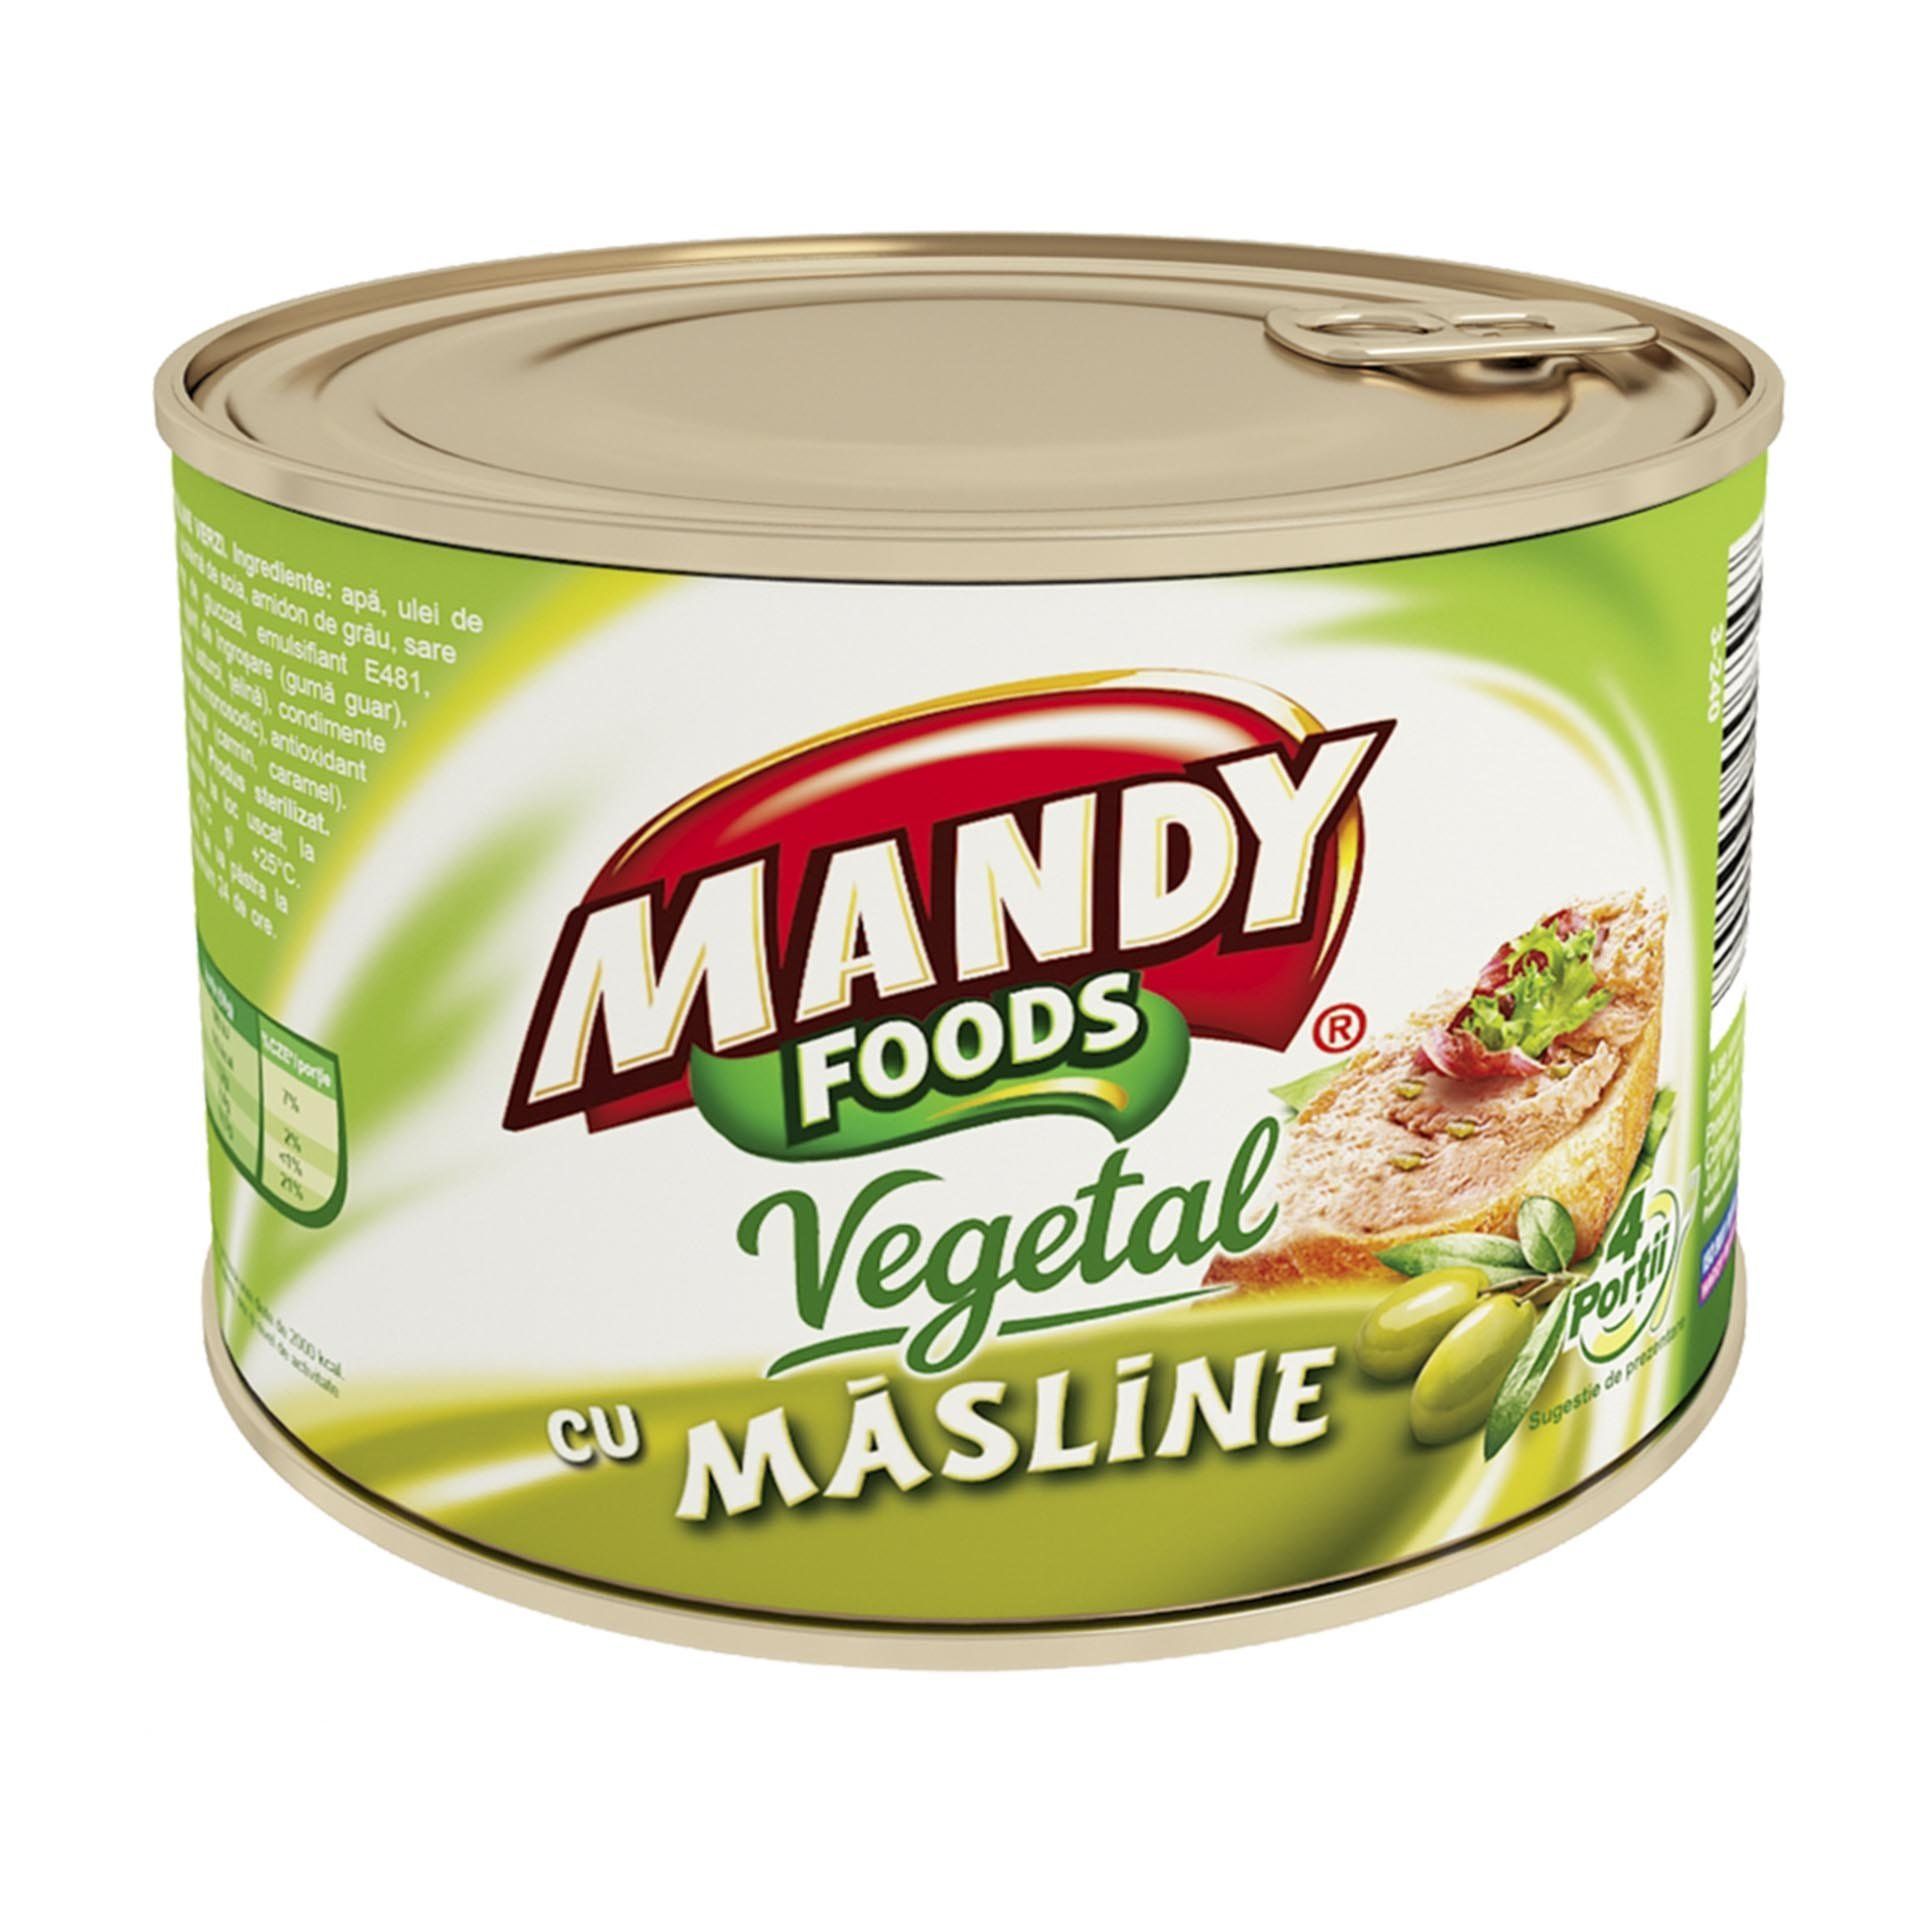 Spanac vegetal, Mandy